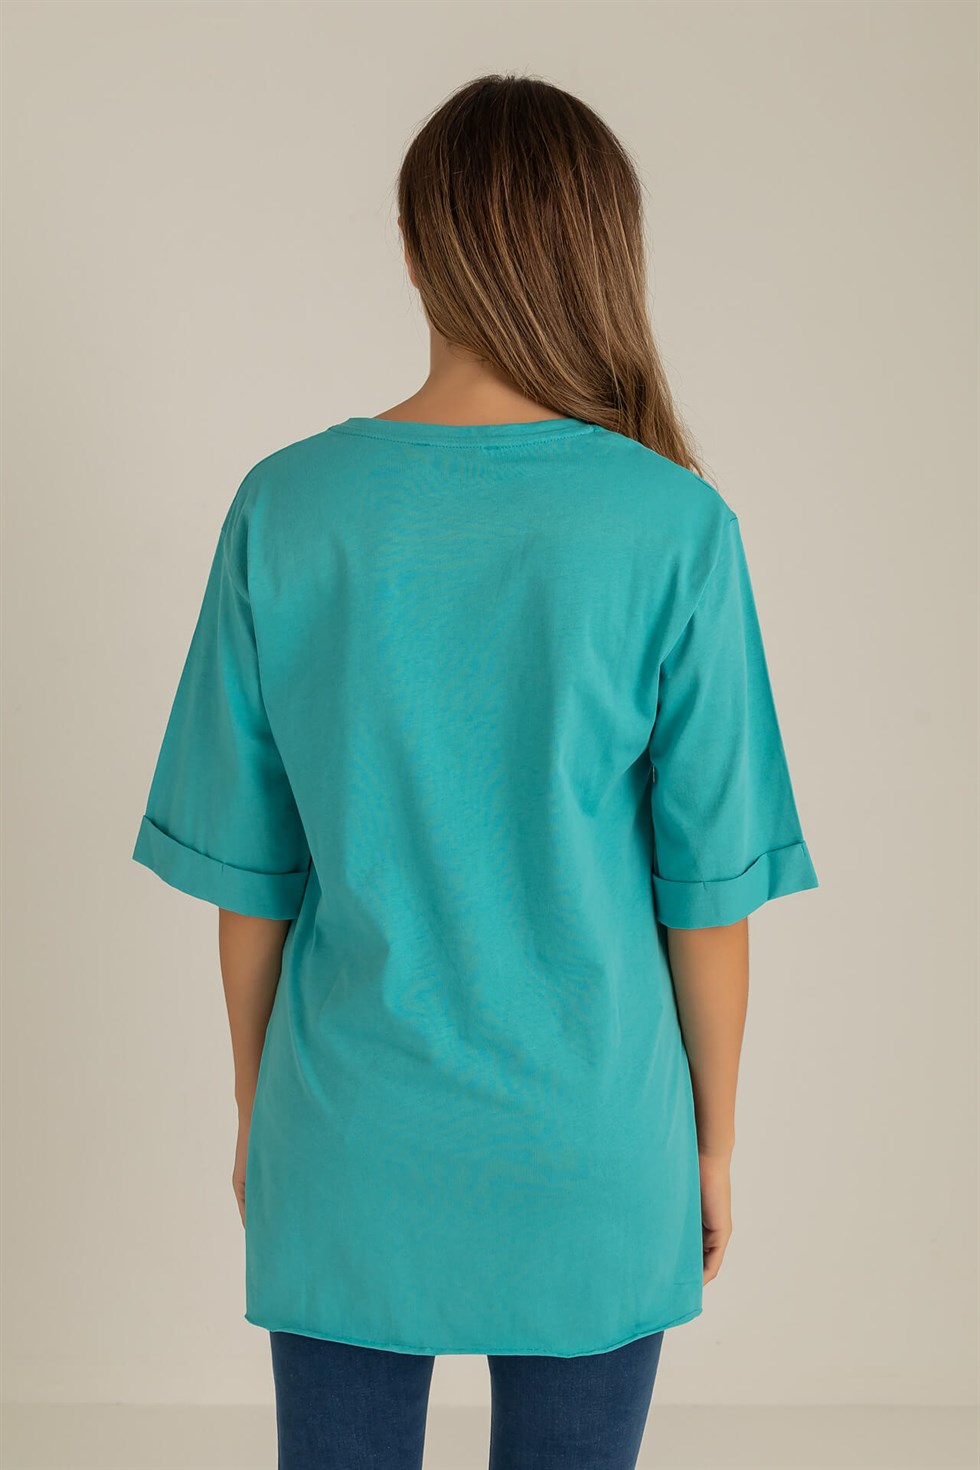 Deniz Butik Kol Kat Yan Yırtmaçlı T-Shirt - TURKUAZ. 1